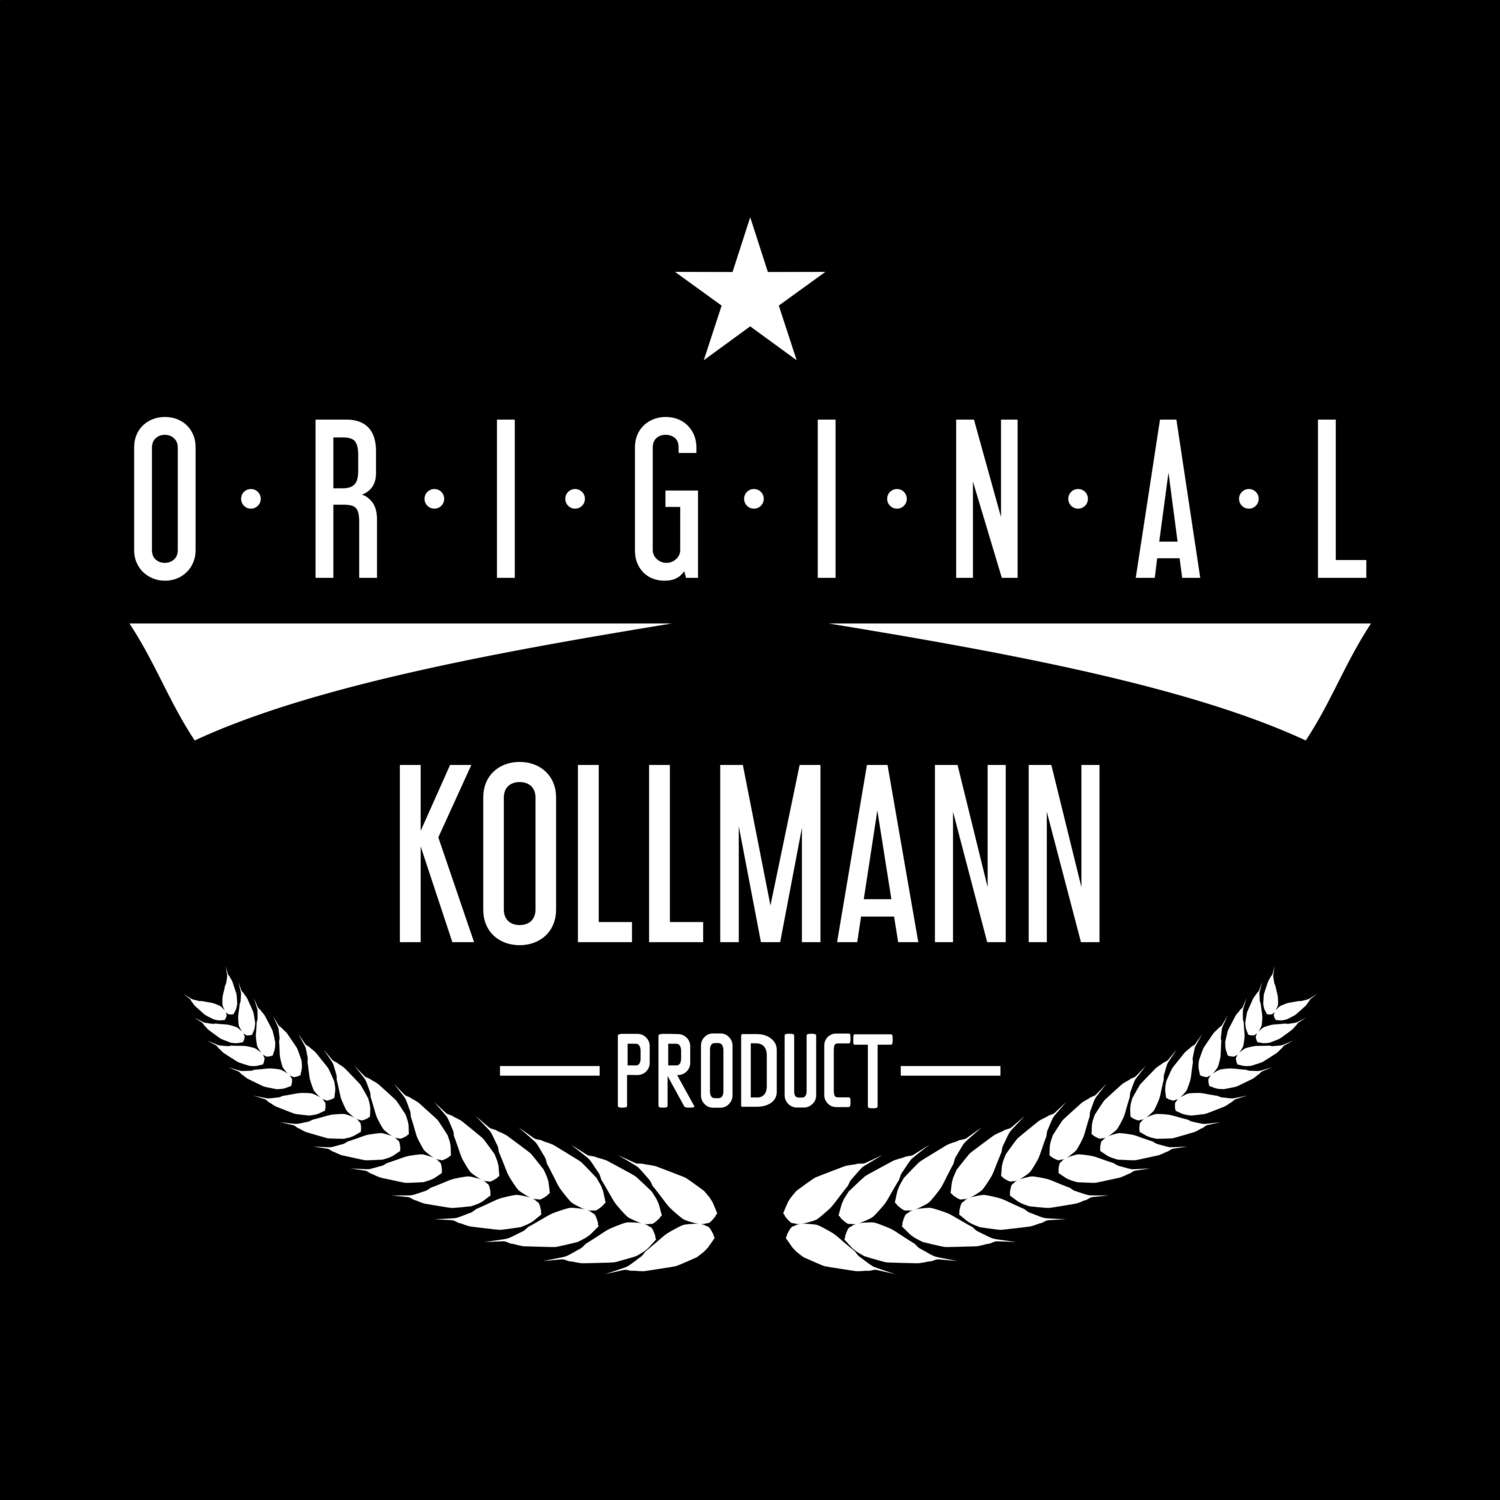 Kollmann T-Shirt »Original Product«